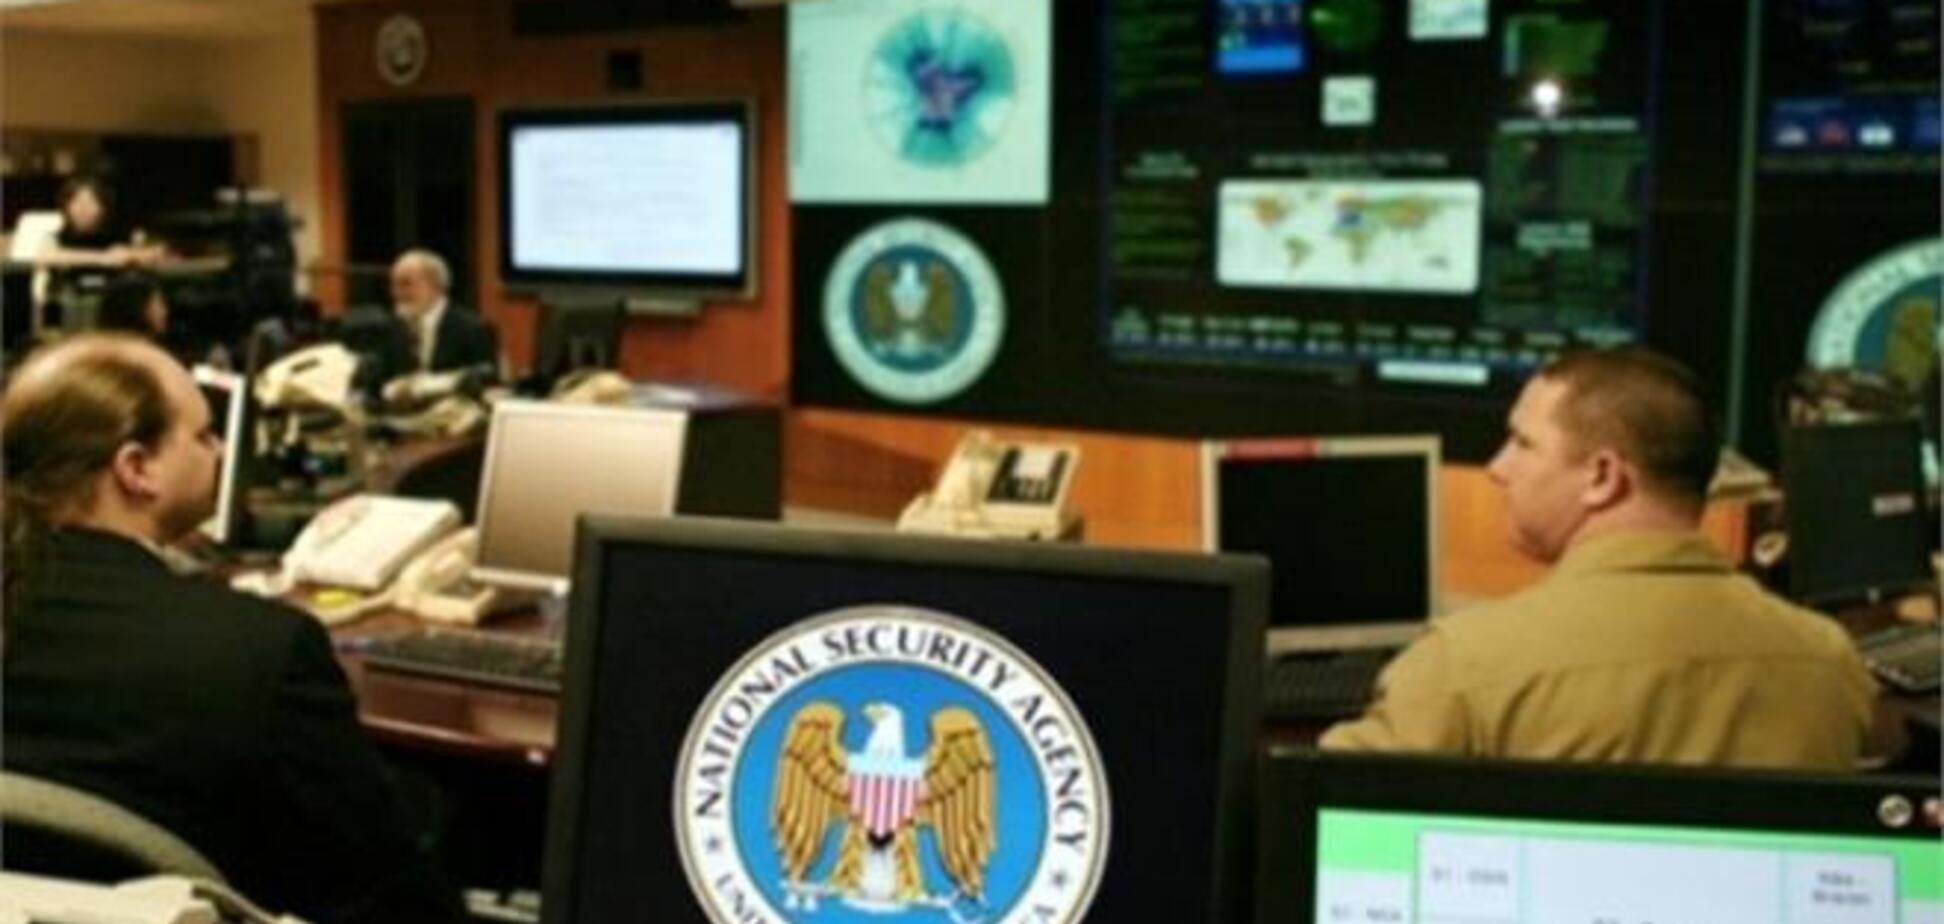 После истории со Сноуденом АНБ решило уволить 90% сисадминов